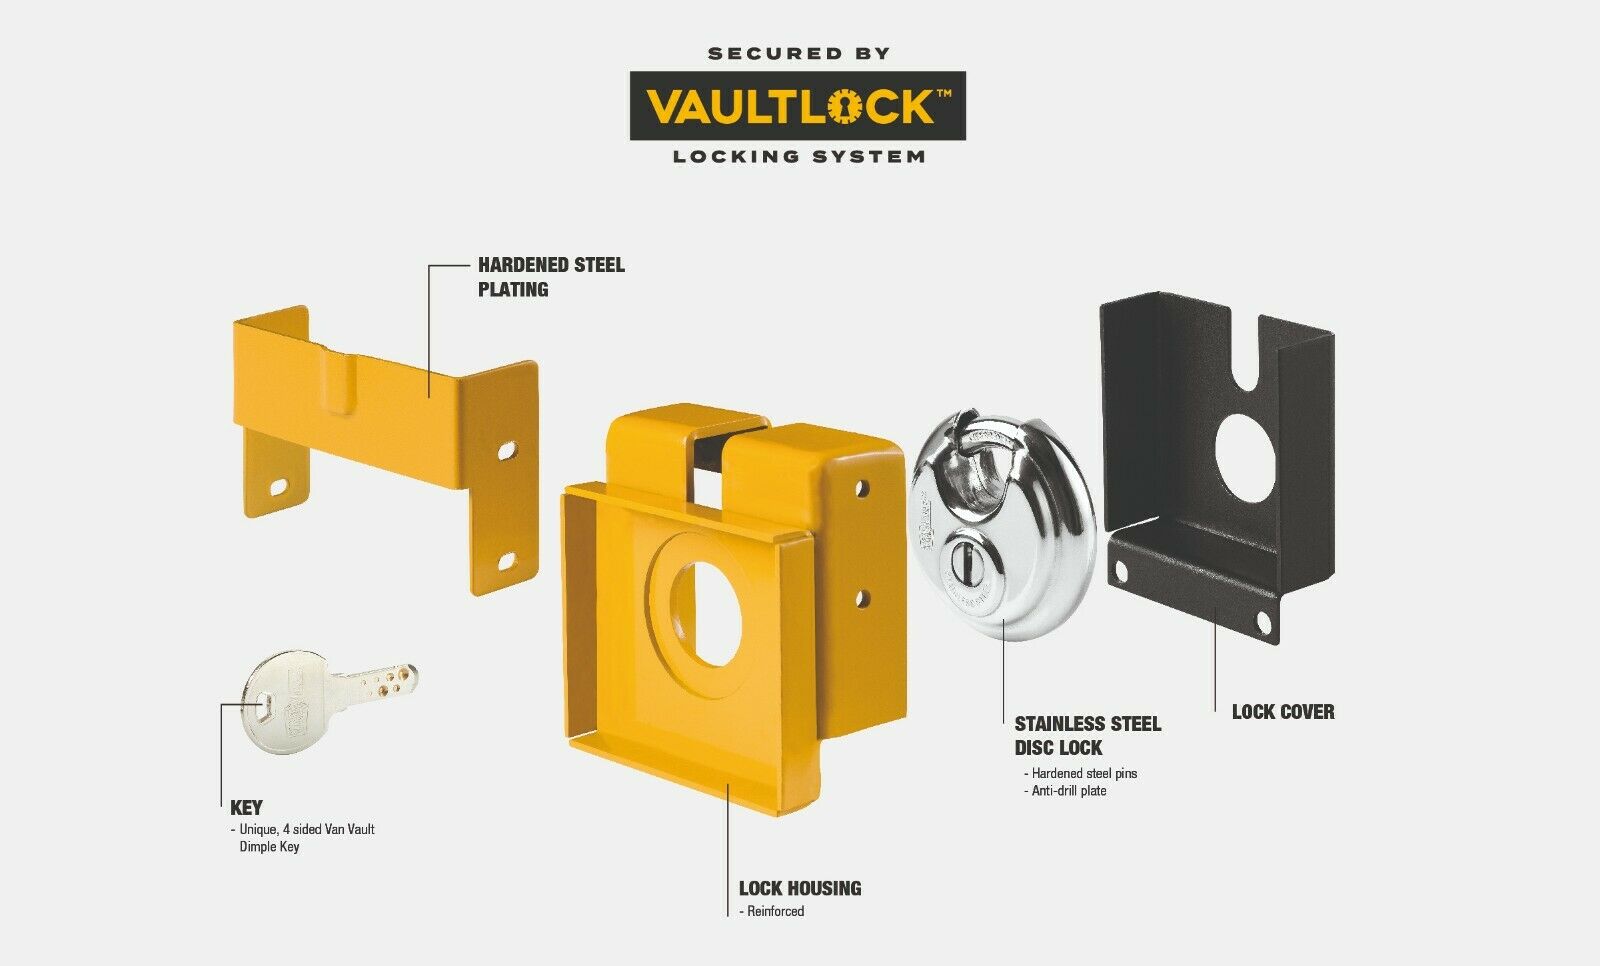 Van Vault Outback Van Truck Security Box S10820